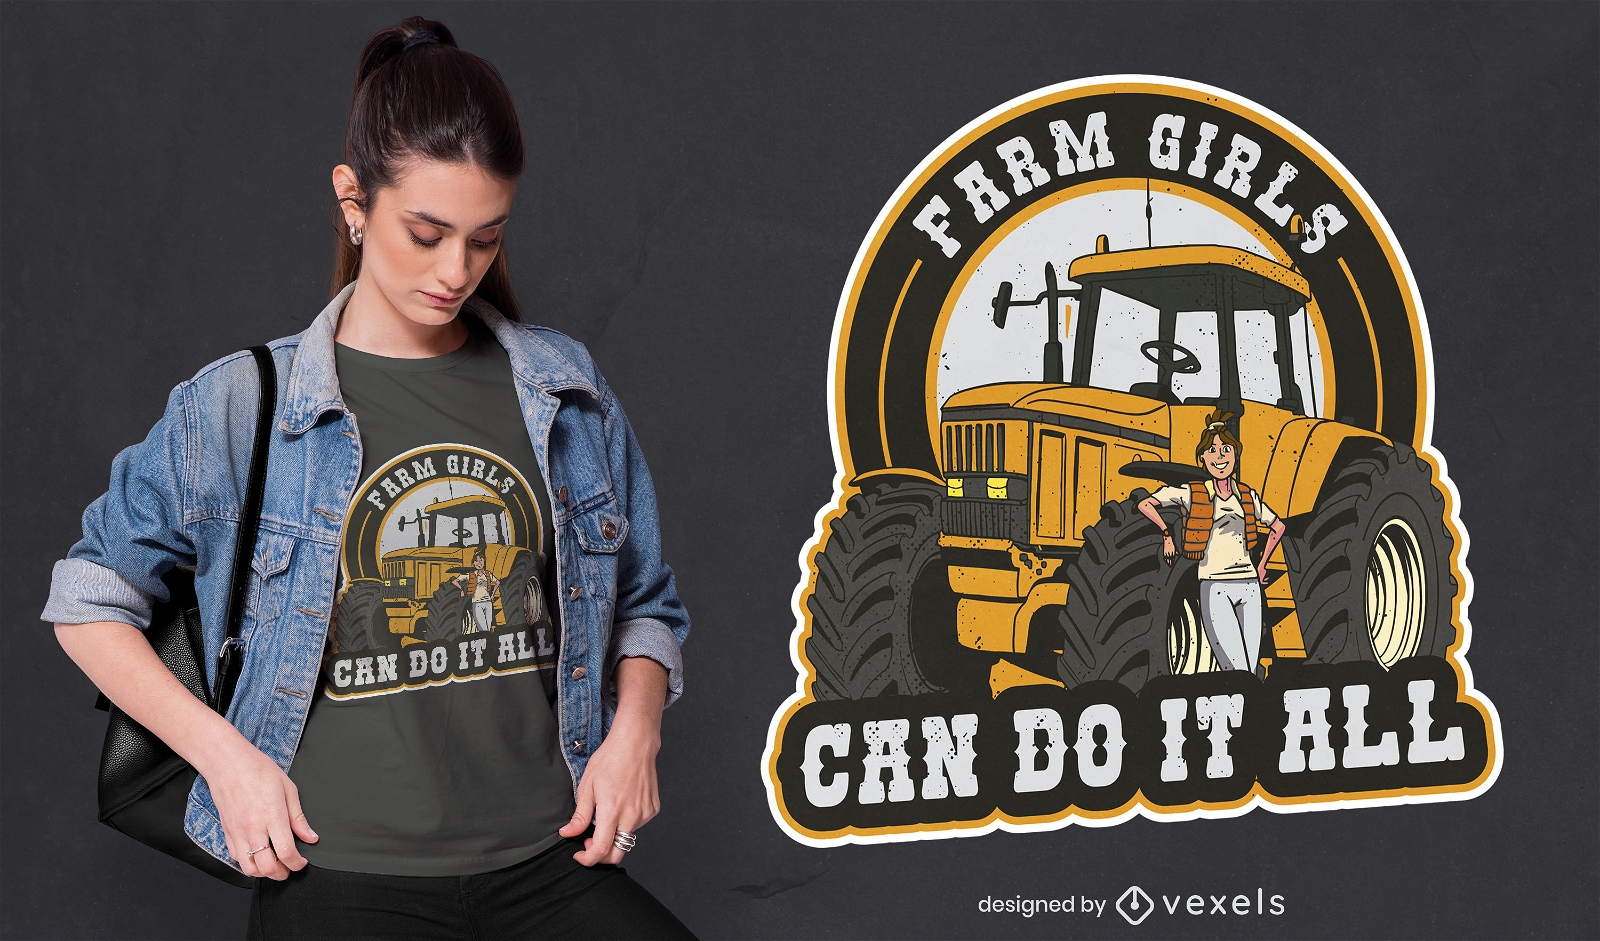 Chica granjera con diseño de camiseta de camión.